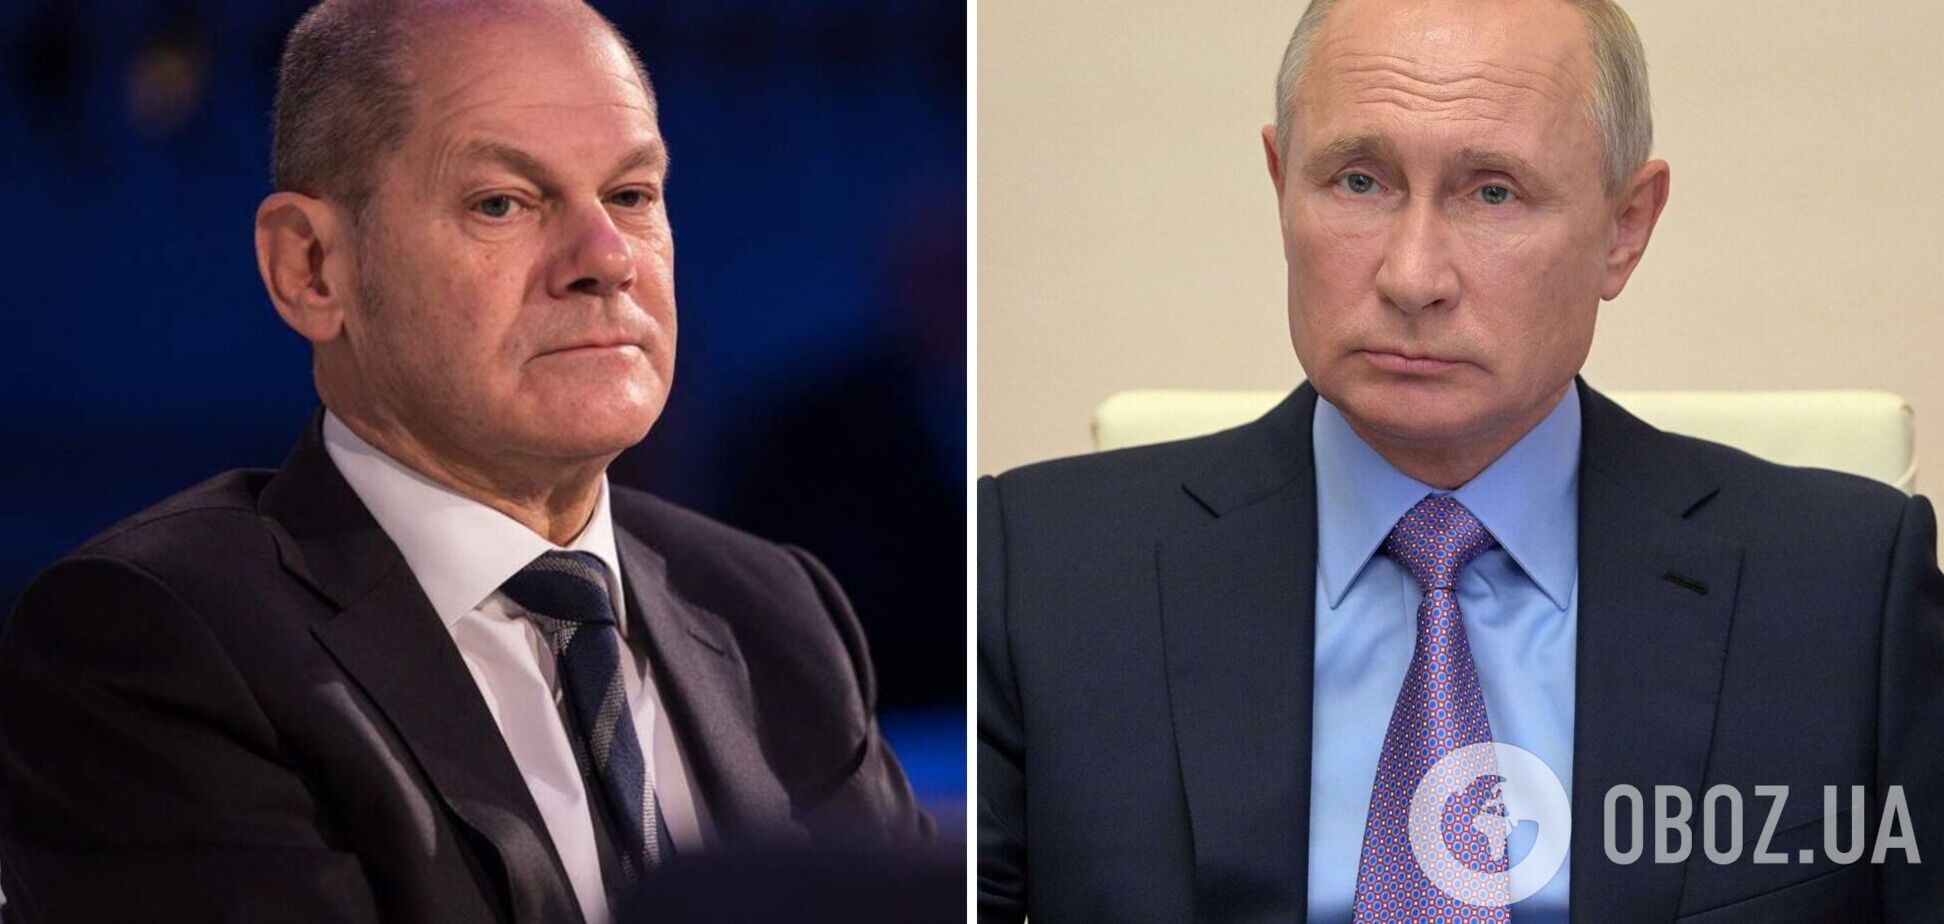 Шольц упрекнул Путина в 'отсутствии реализма': захватить силой кусок Украины не выйдет